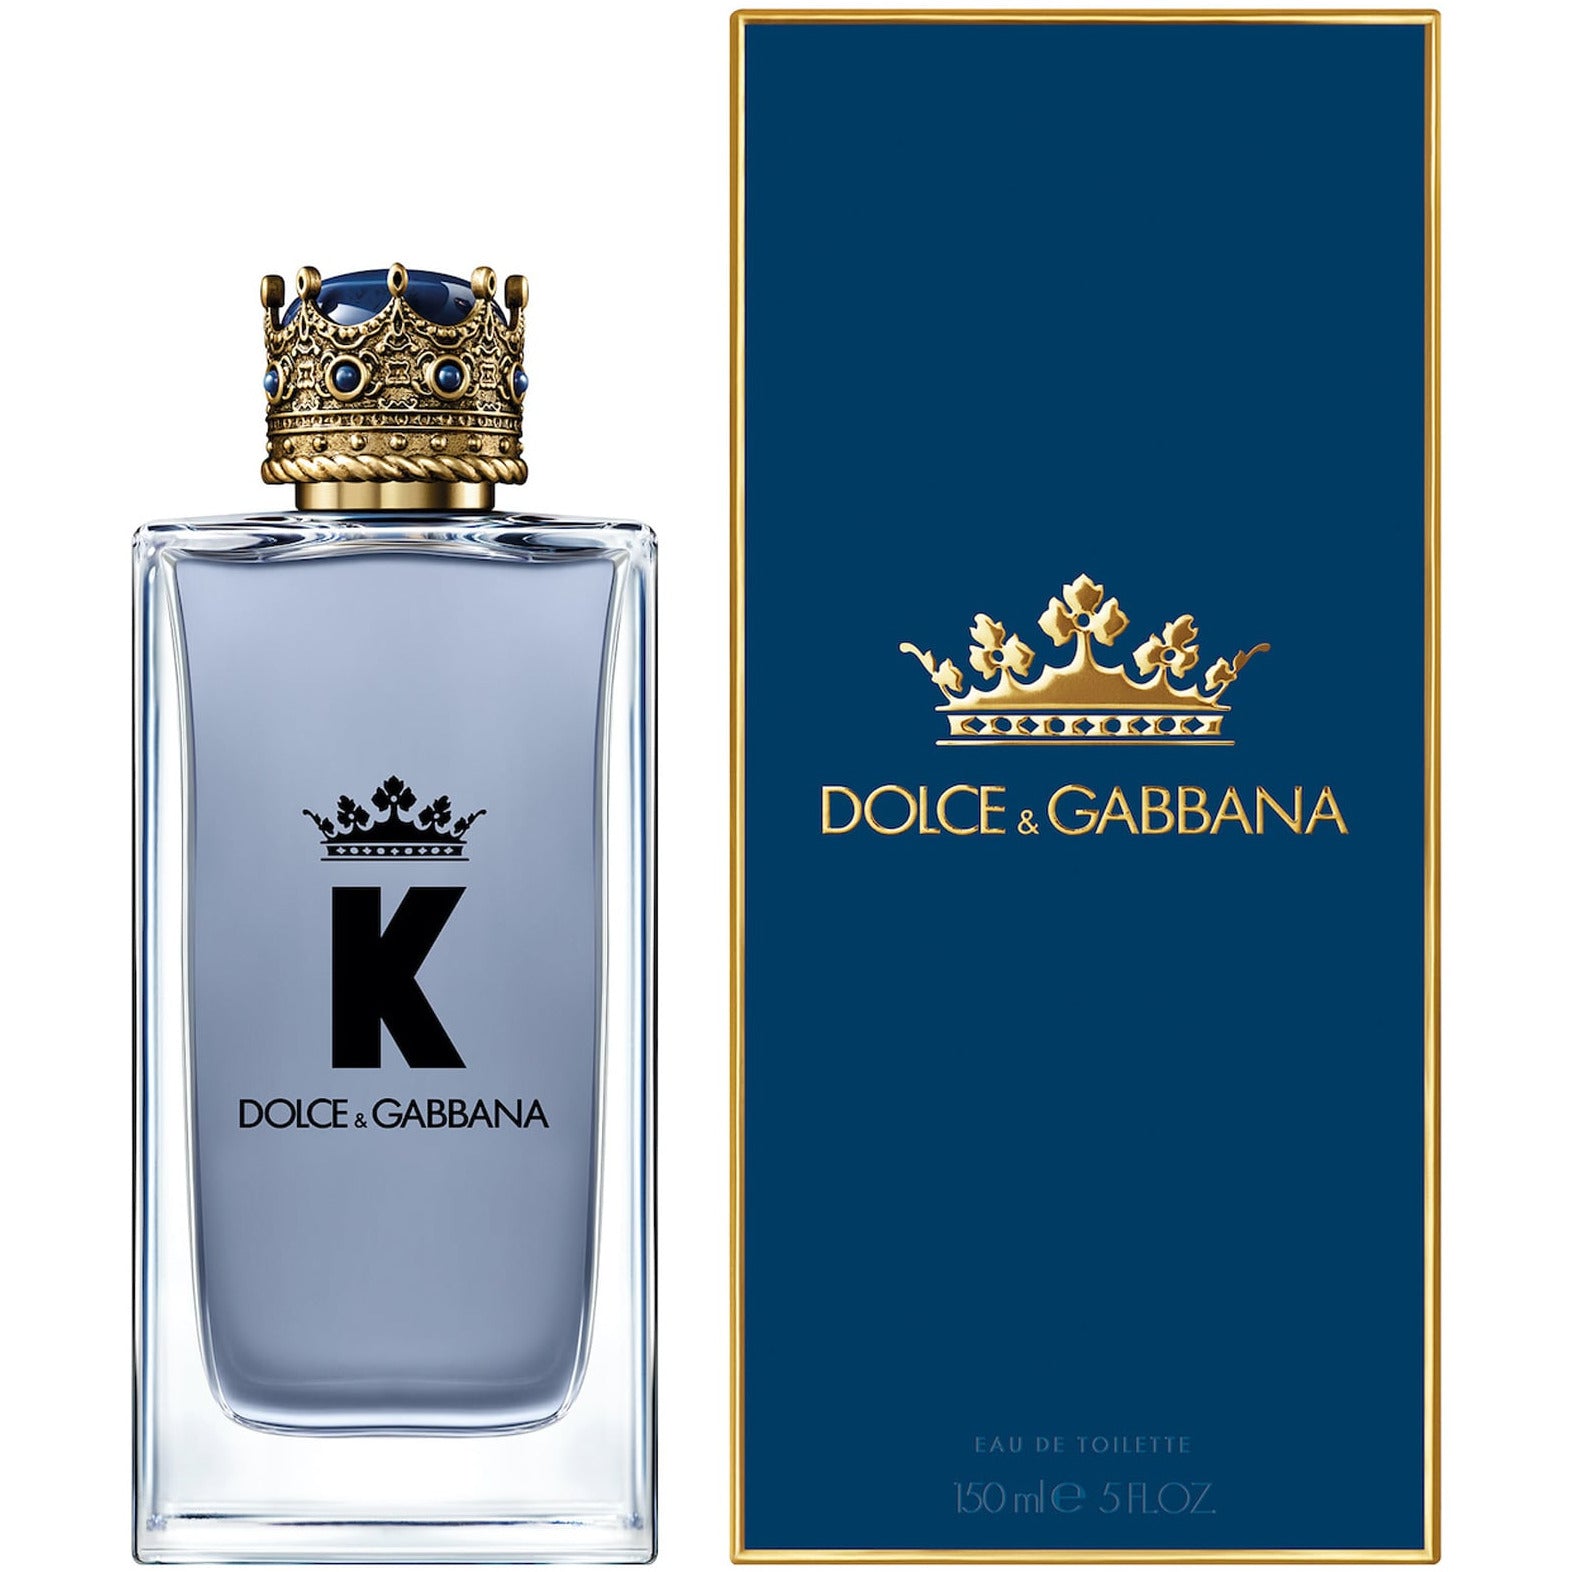    Dolce-_-Gabbana-King